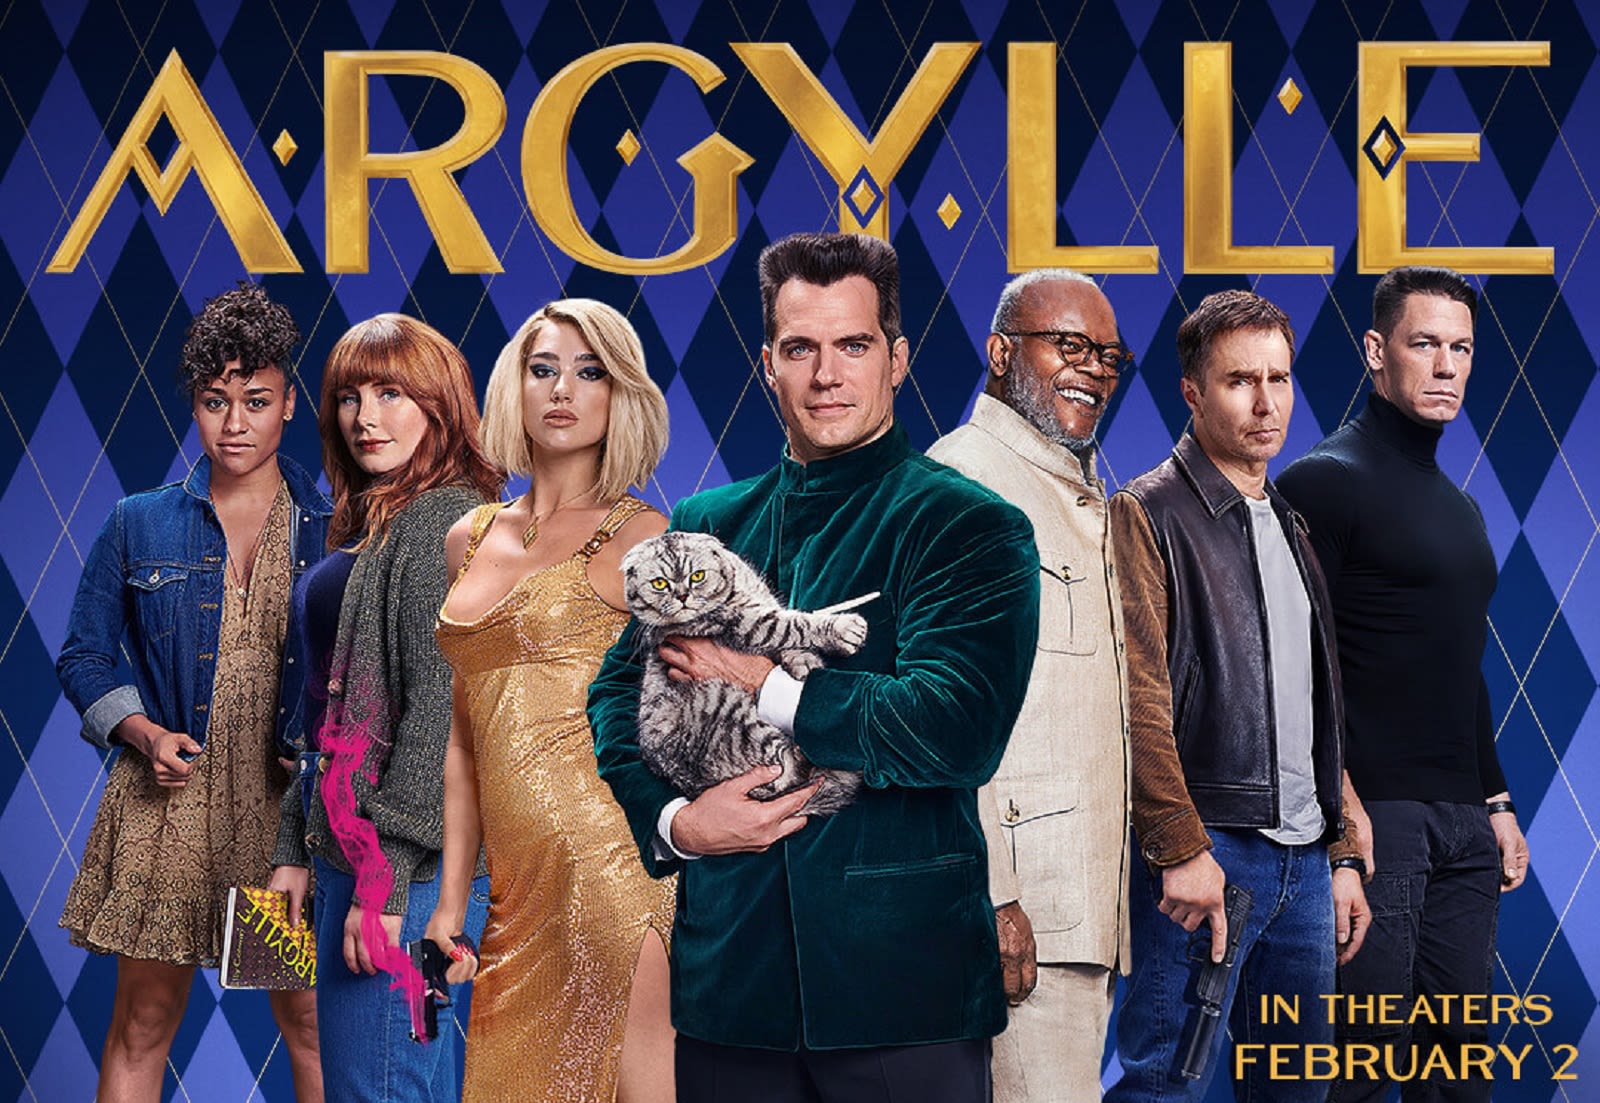 'Argylle' puts a twist on the spy thriller